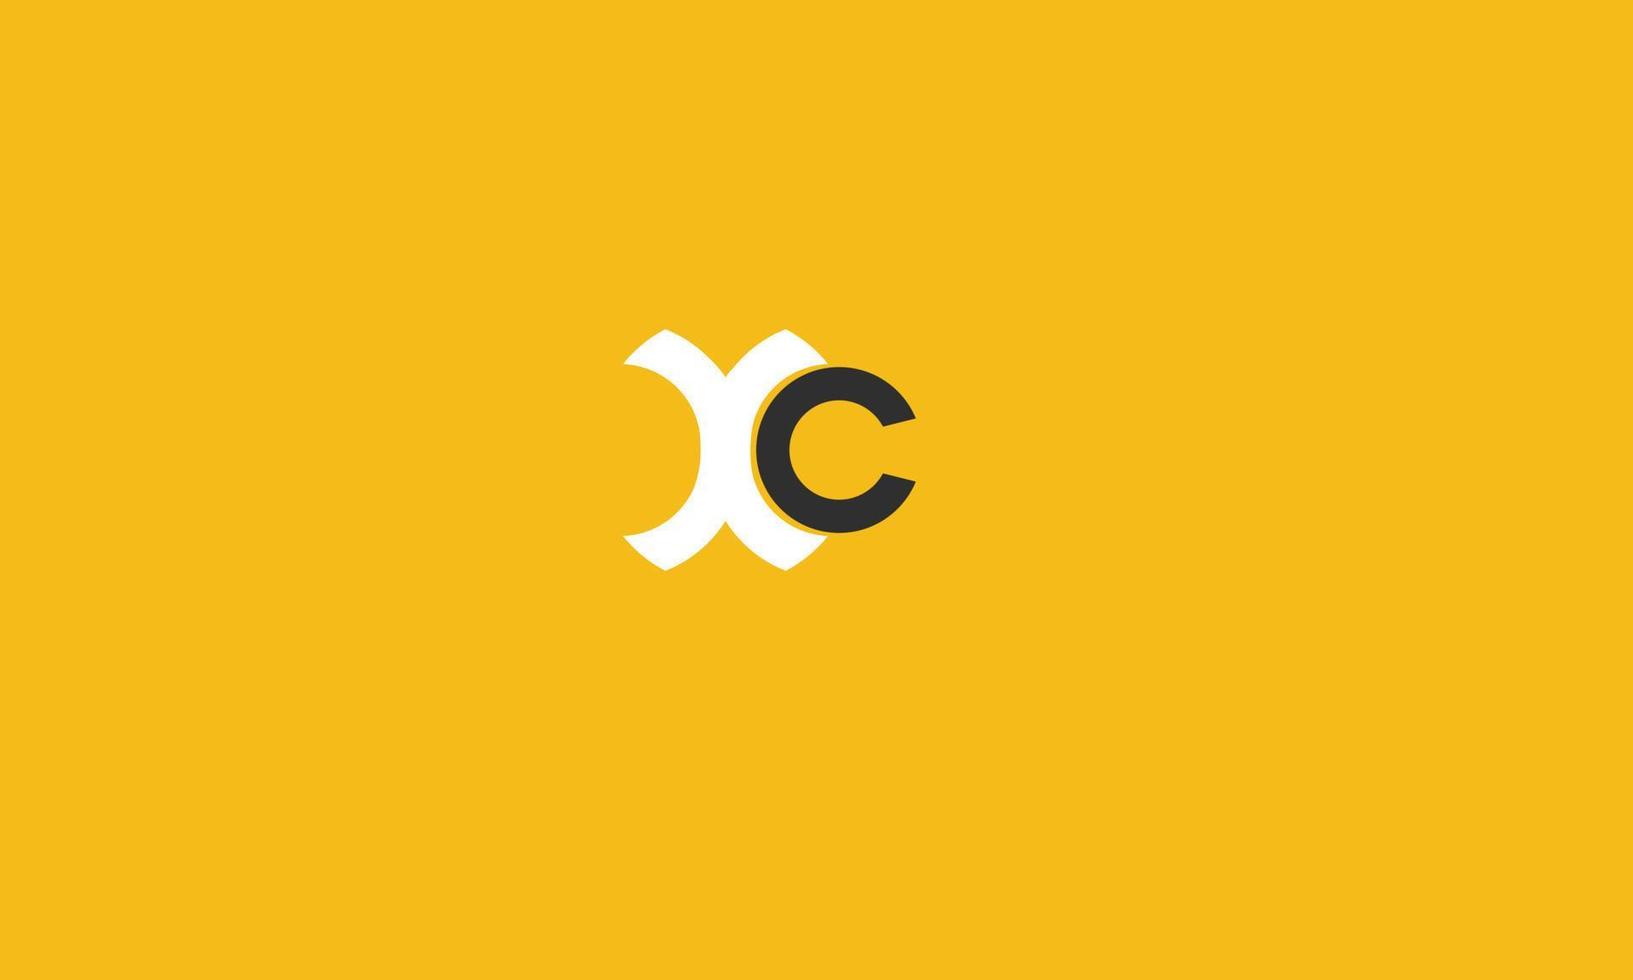 xc alphabet lettres initiales monogramme logo vecteur